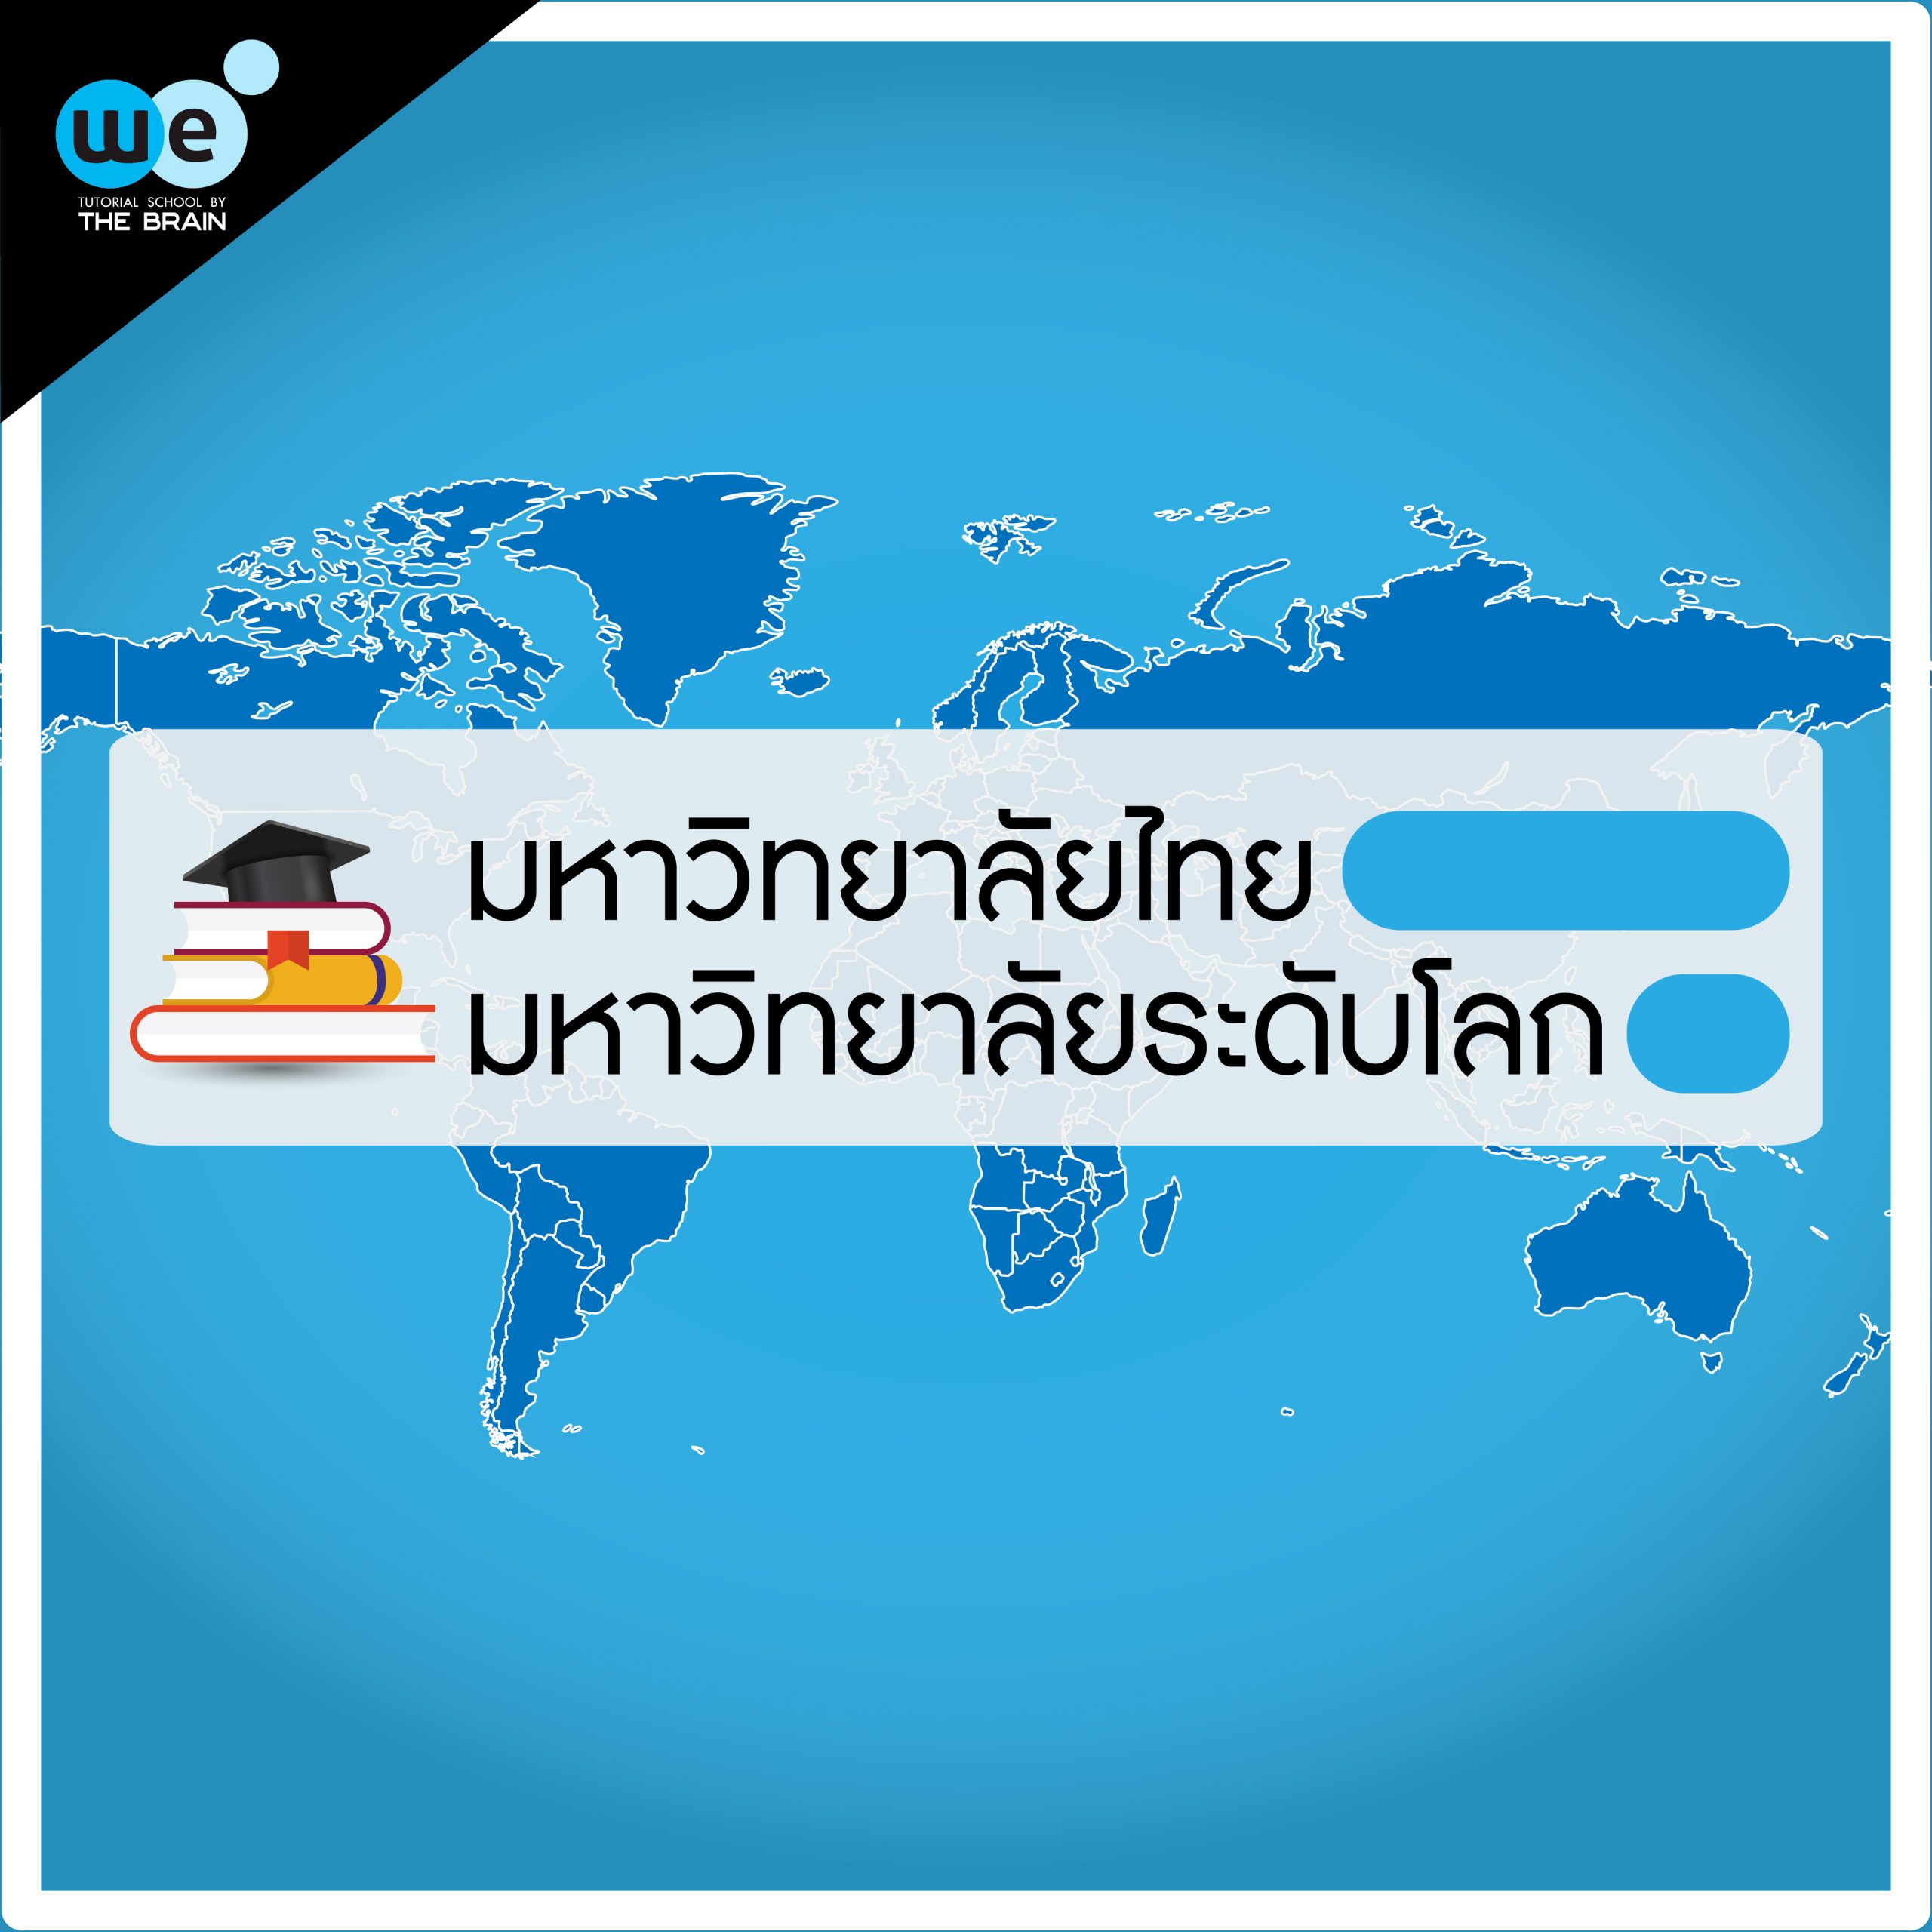 มหาวิทยาลัยไทย มหาวิทยาลัยระดับโลก